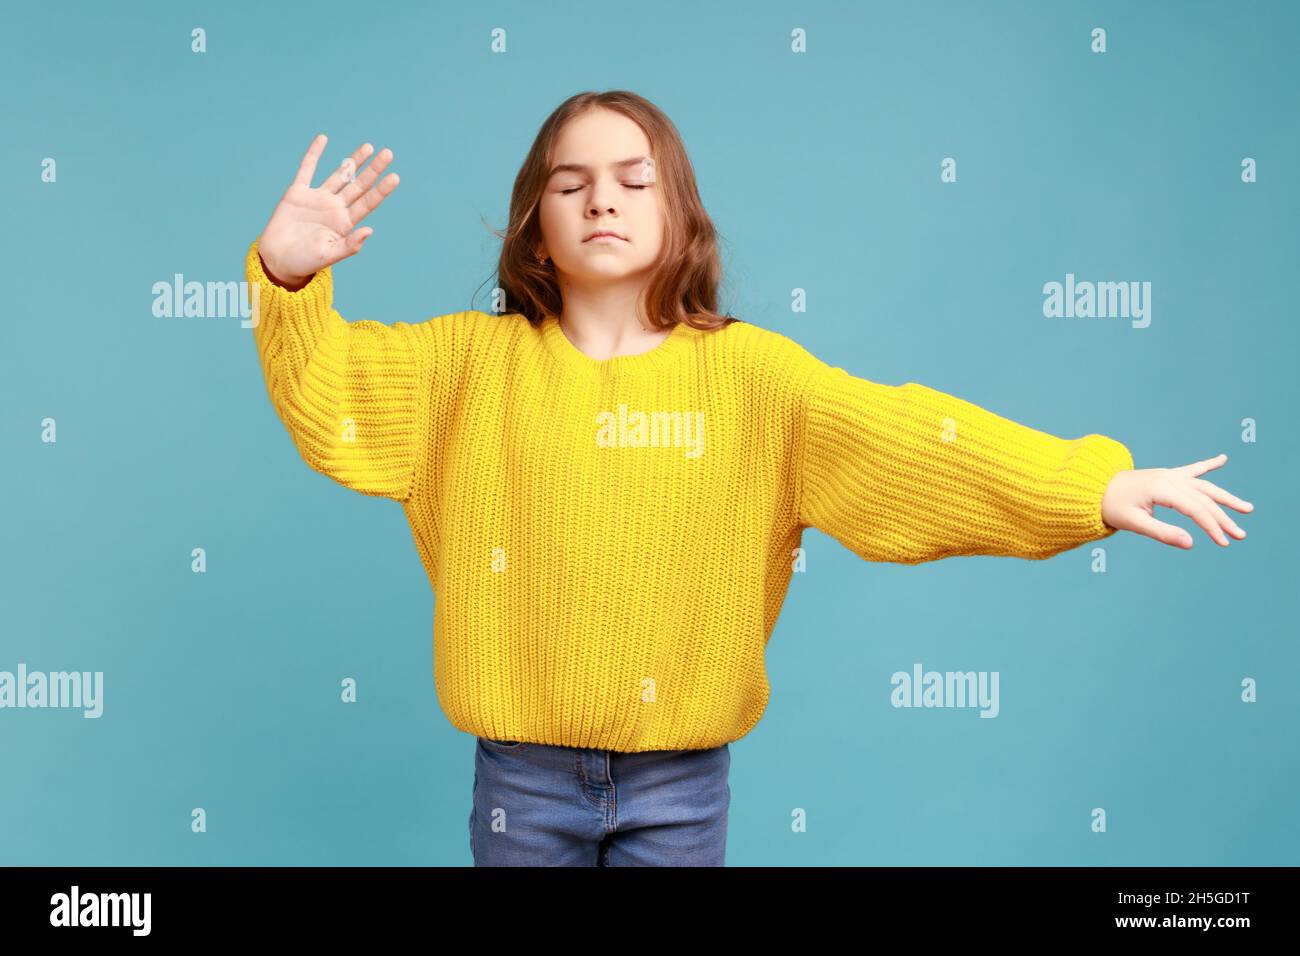 Portrait of cute Little girl Walking blind mit geschlossenen Augen und ausgestreckten Händen, Suchweg, tragen gelben lässigen Stil Pullover. Innenaufnahme des Studios isoliert auf blauem Hintergrund. Stockfoto